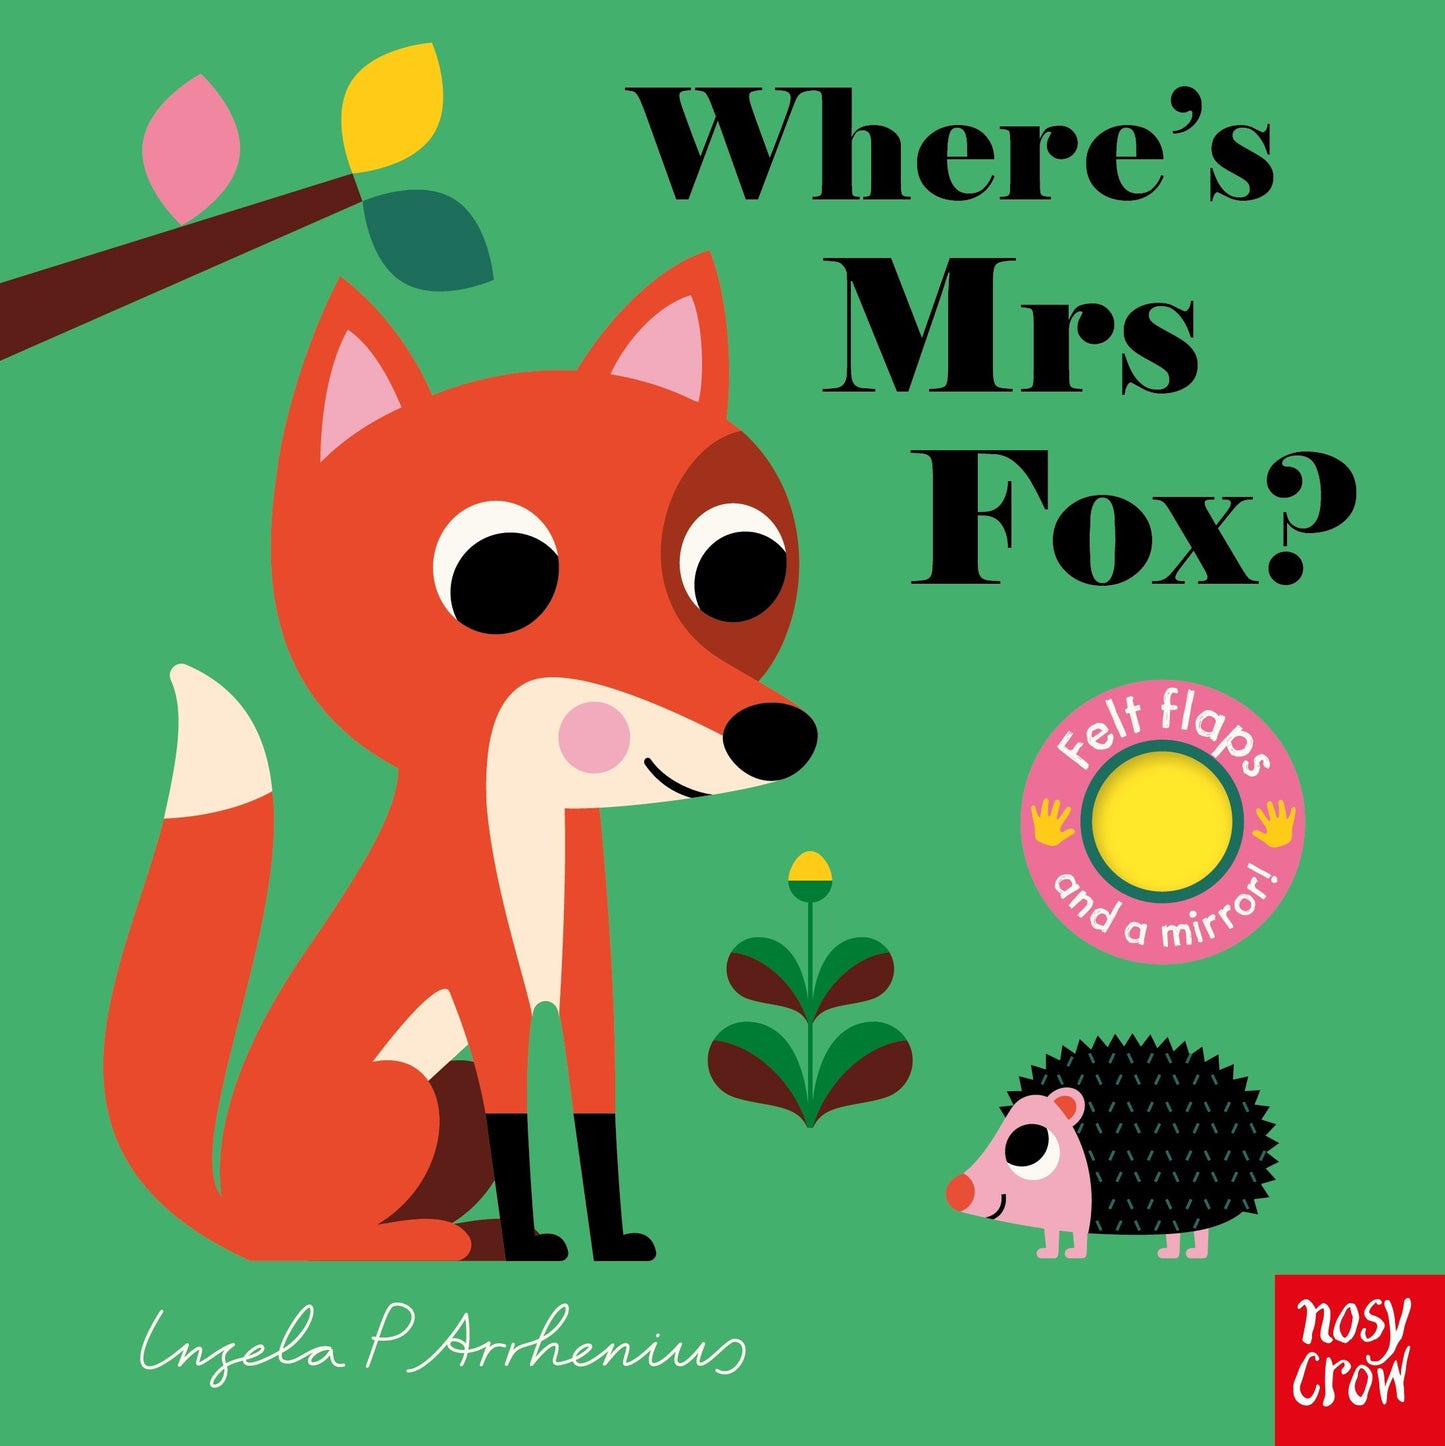 Where's Mrs Fox - Ingela P Arrhenius